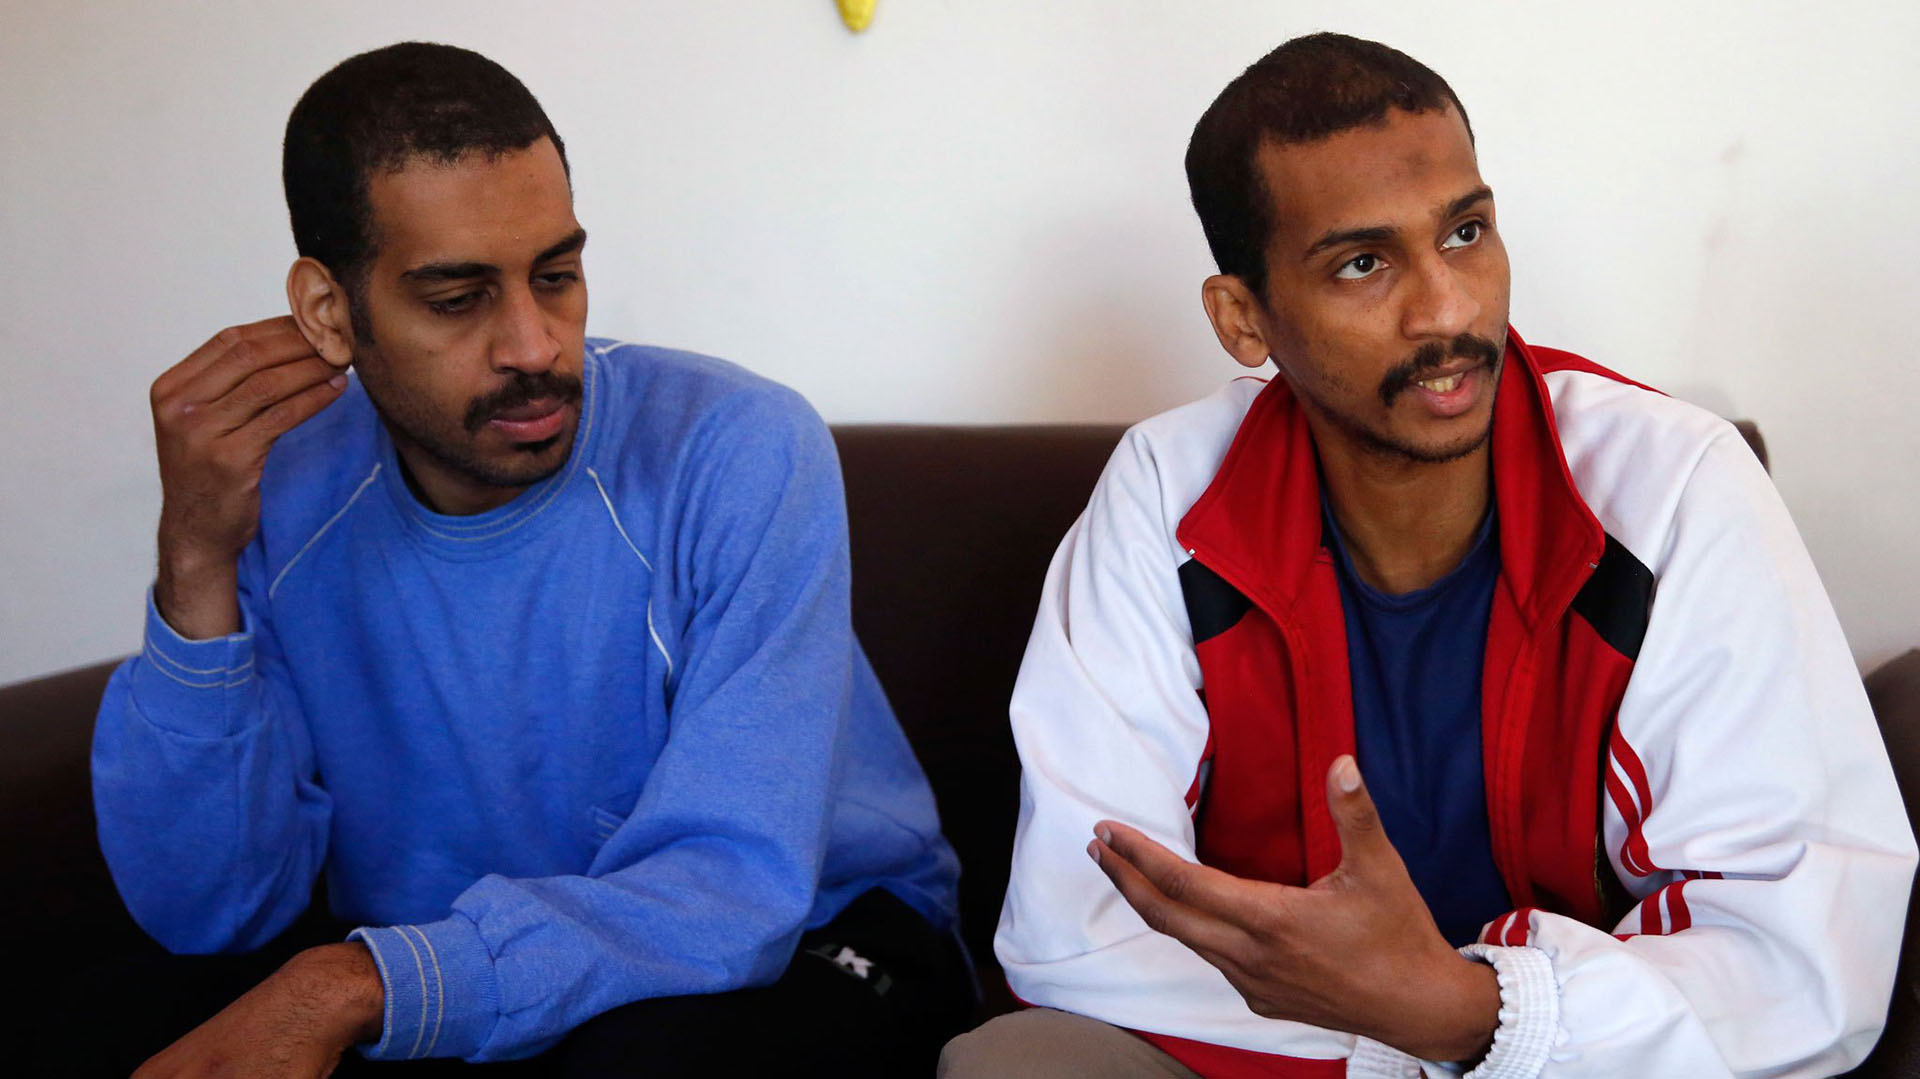 Alexanda Kotey (izquierda) y El Shafee el-Sheikh durante una entrevista previa al juicio en Virginia donde los sentenciaron a cadena perpetua. (AP)